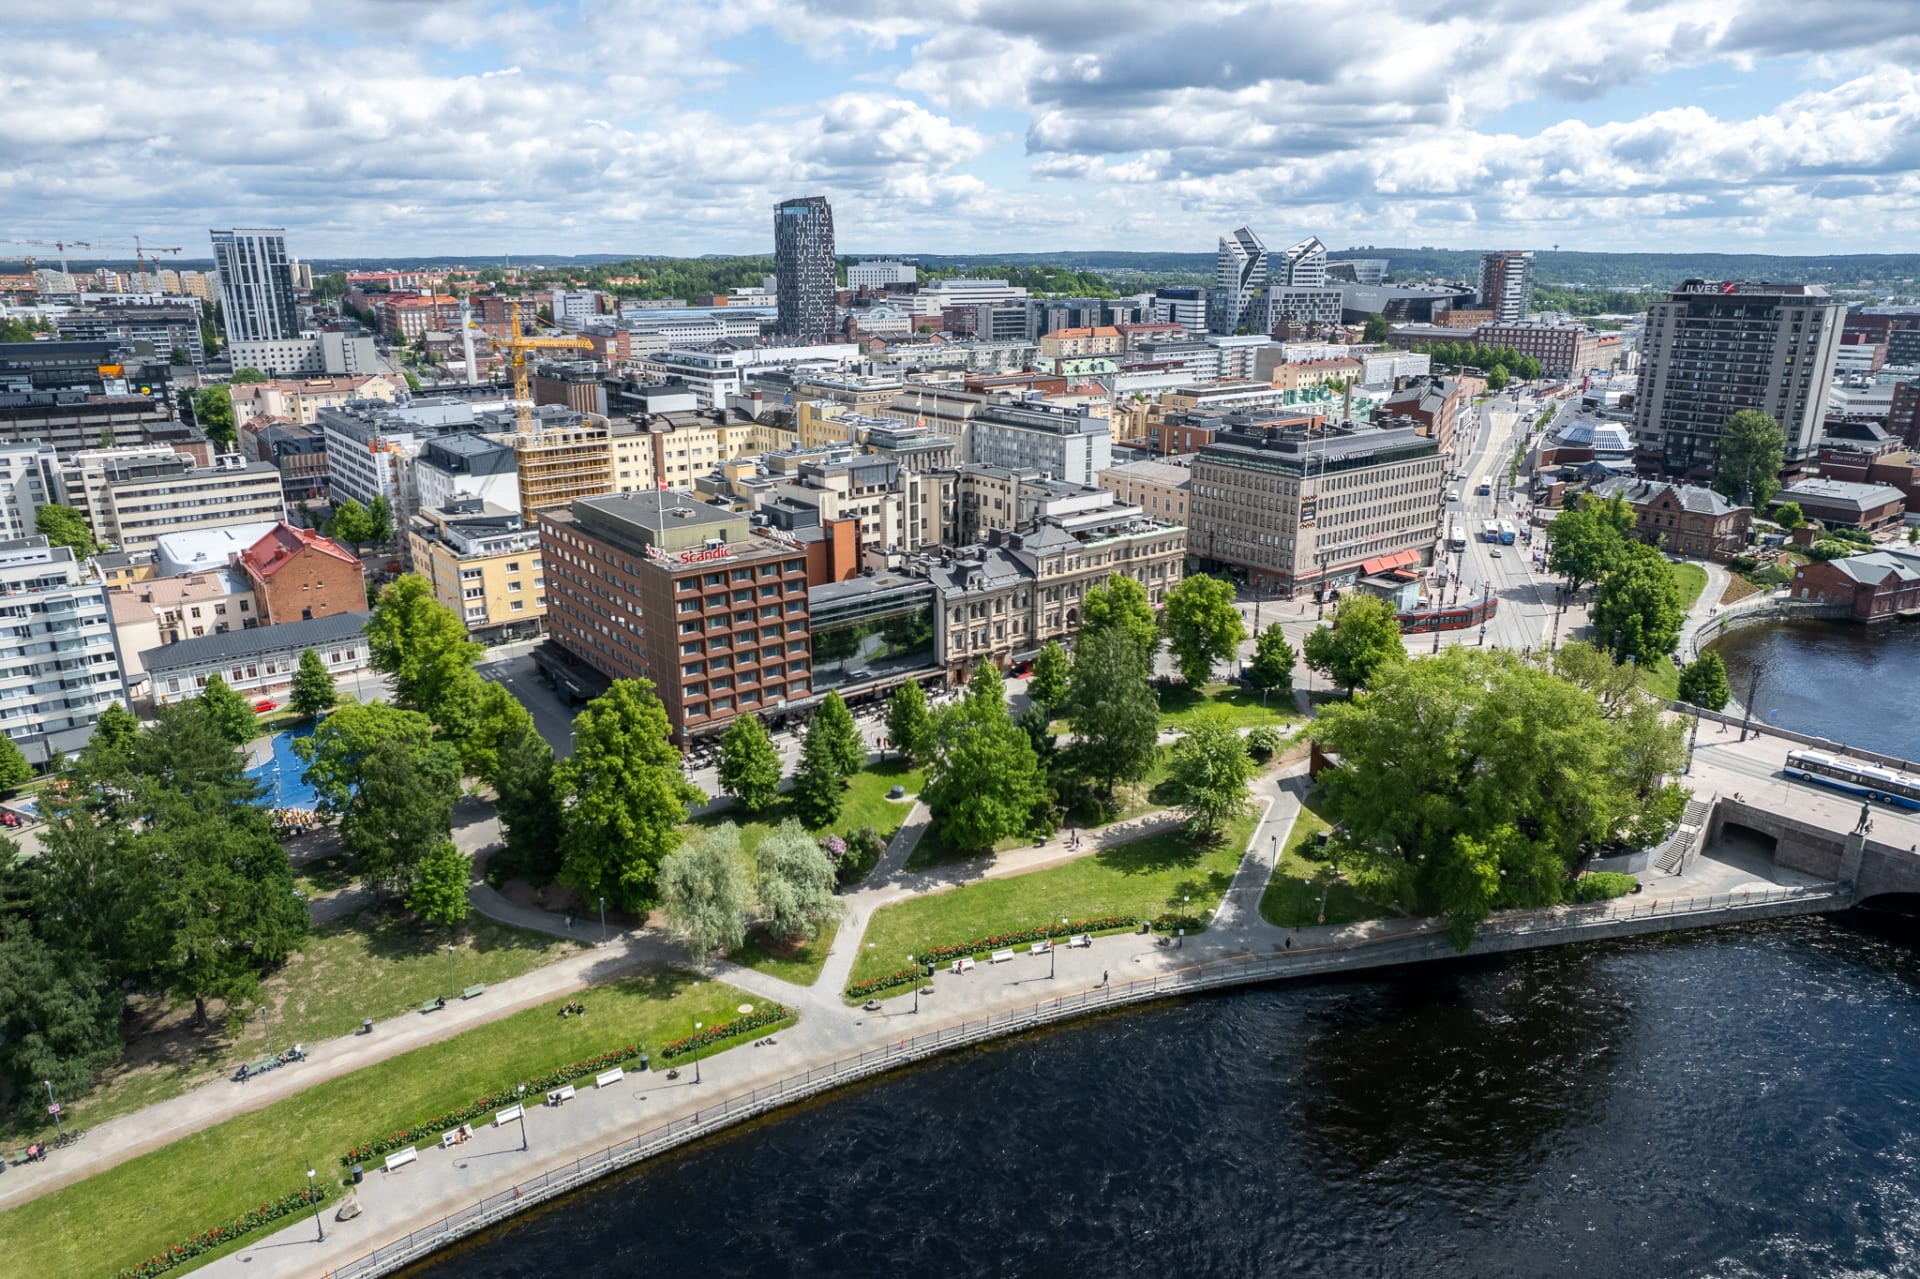 2ndhomes Tampere Oy:n kalustetut asunnot sijaitsevat aivan Tampereen keskustassa parhailla pelipaikoilla.